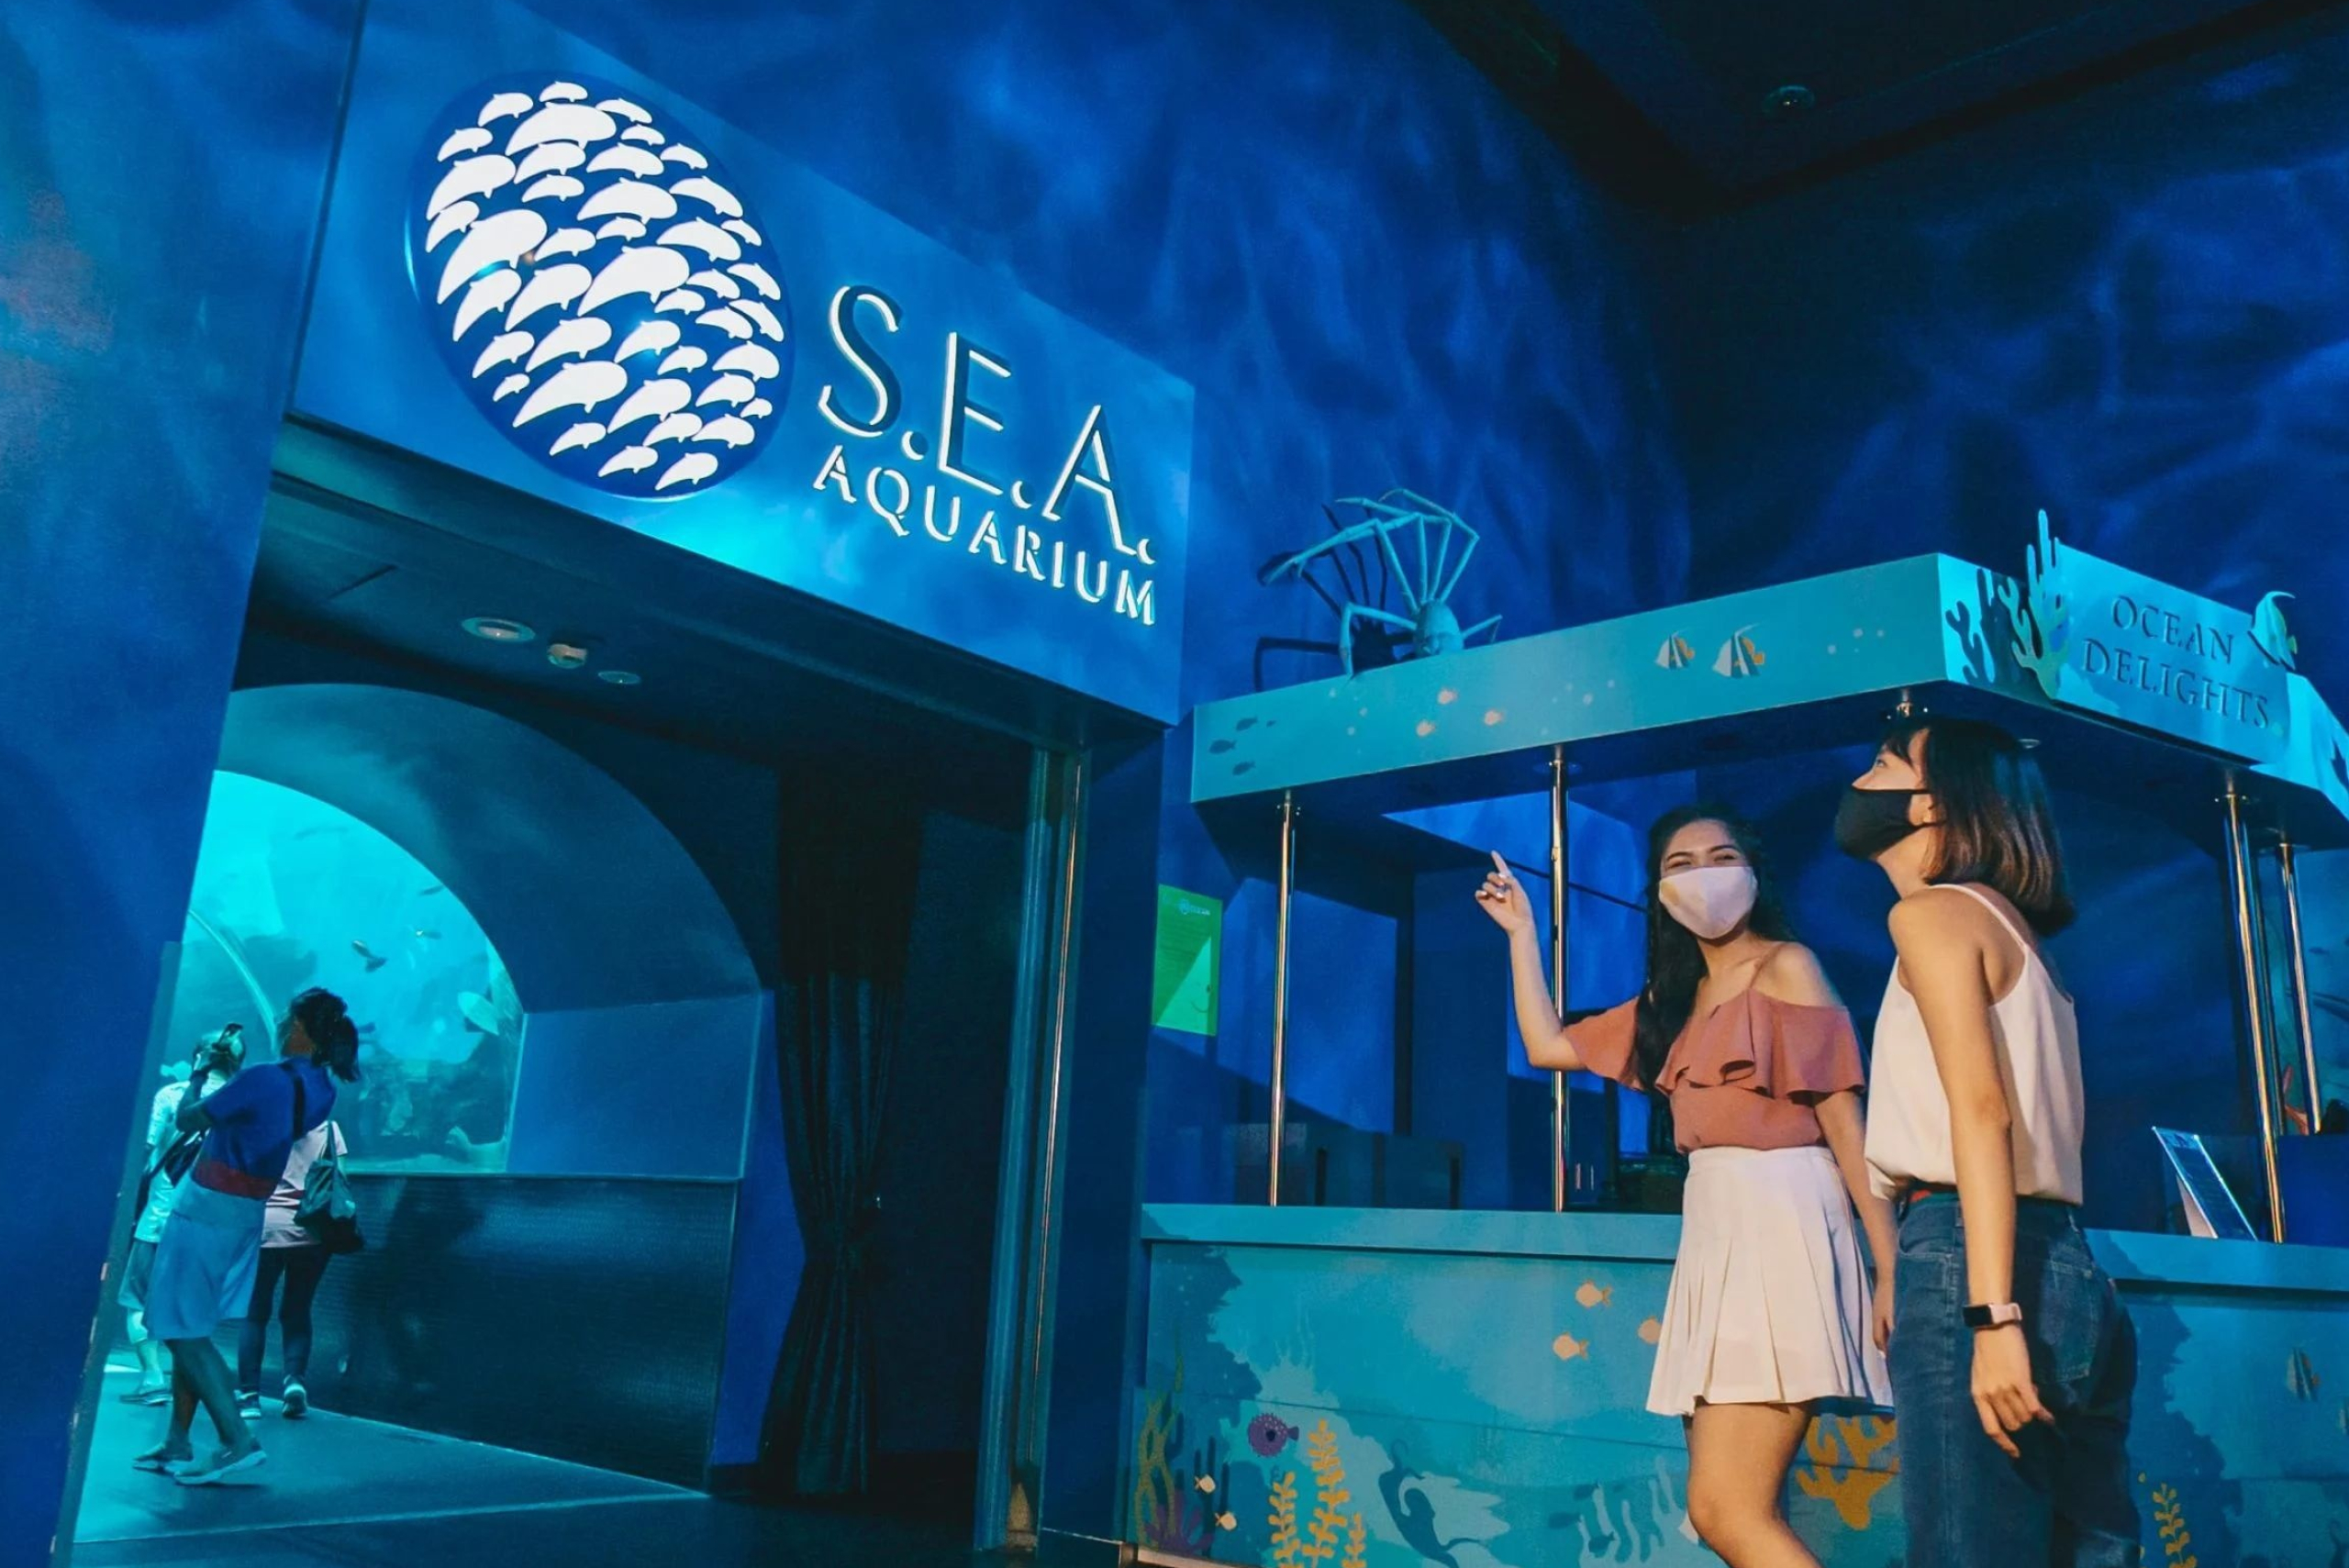 Oceanarium, Sea aquarium renamed Singapore oceanarium, 2560x1710 HD Desktop